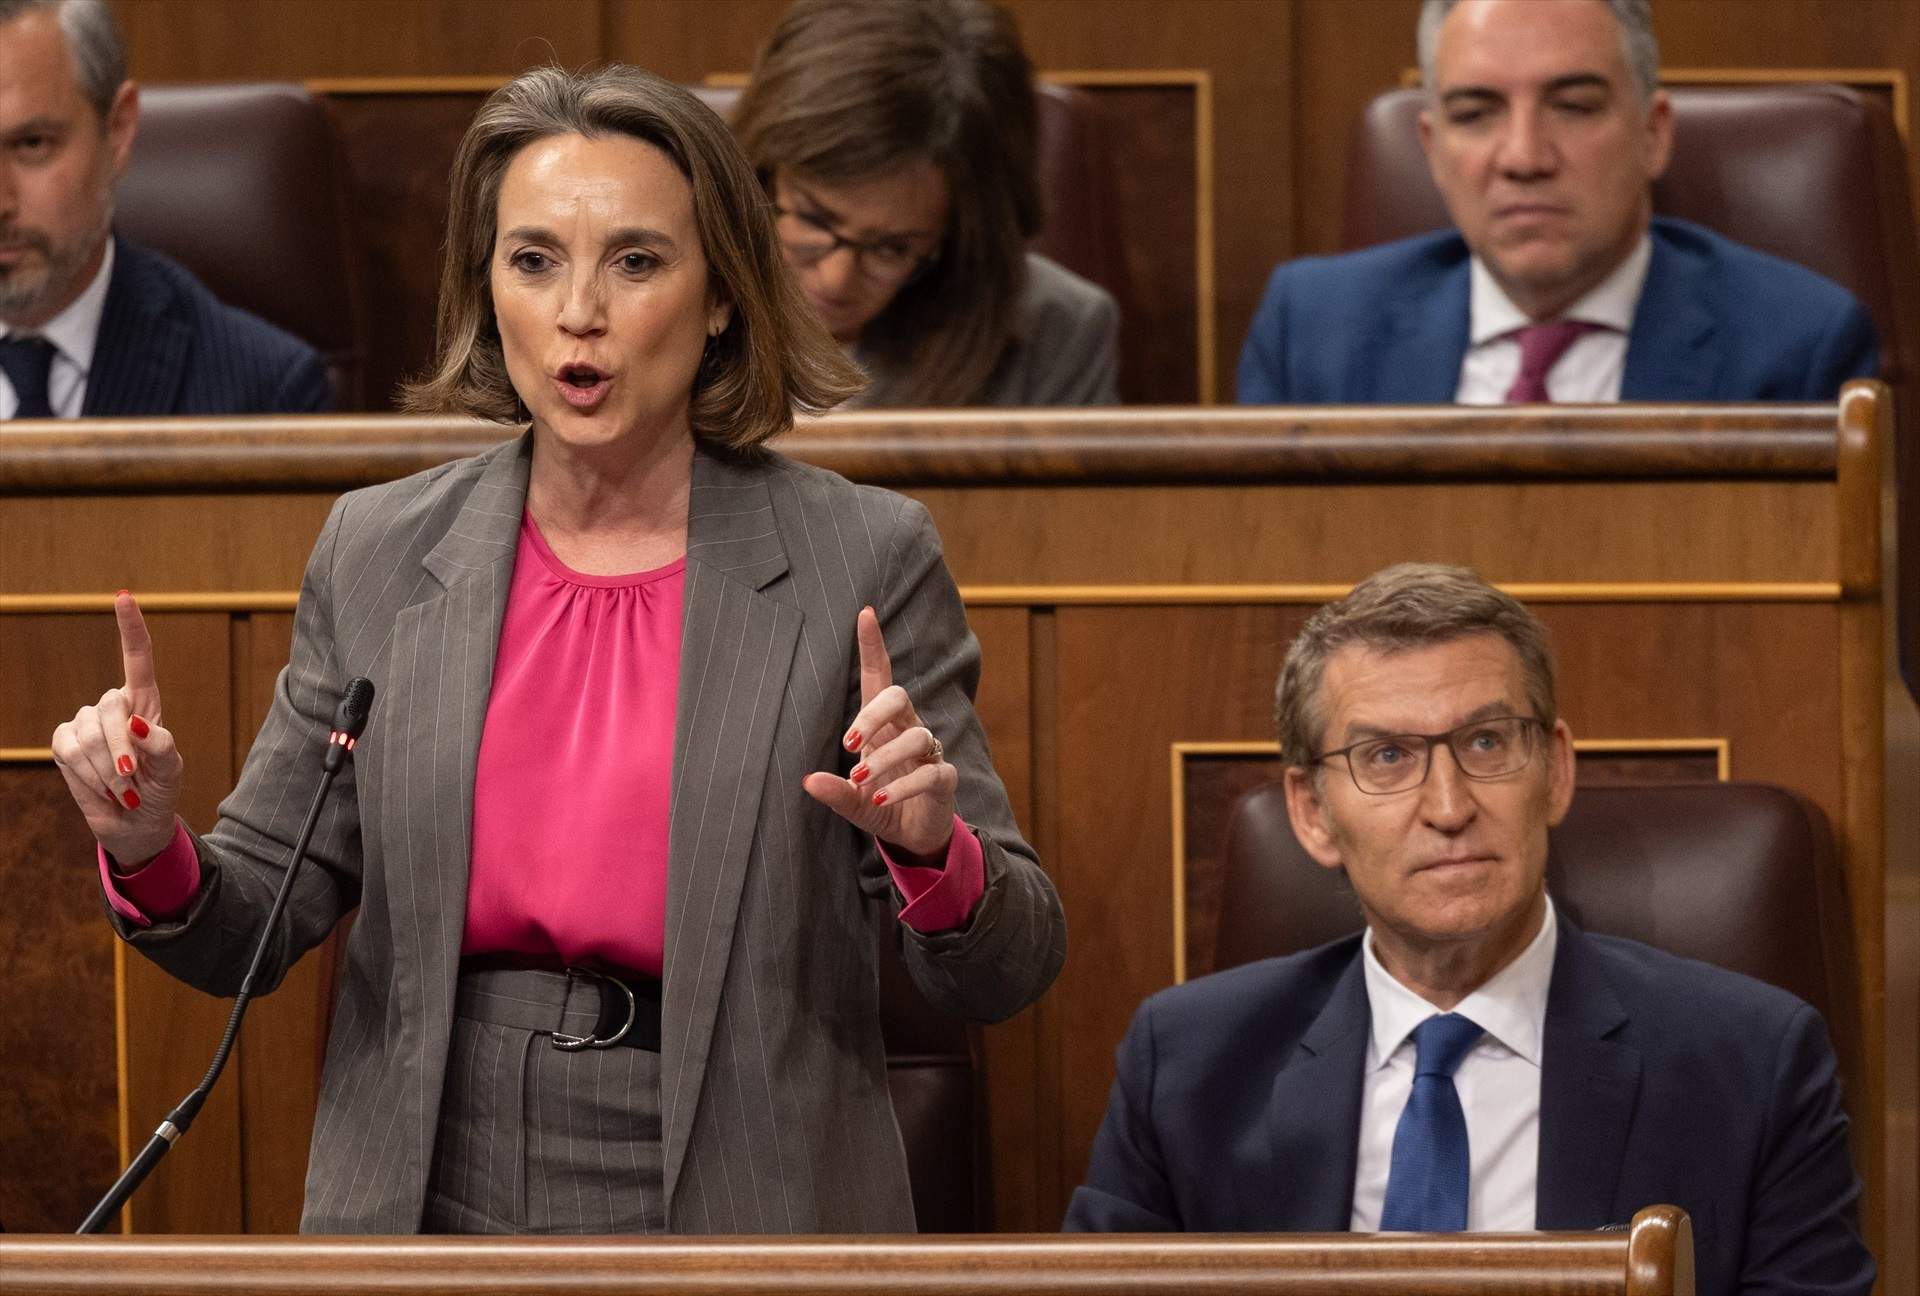 El PP multiplica los ataques contra el PSOE por el caso Koldo: “Coca, mordidas, prostíbulos y saunas”